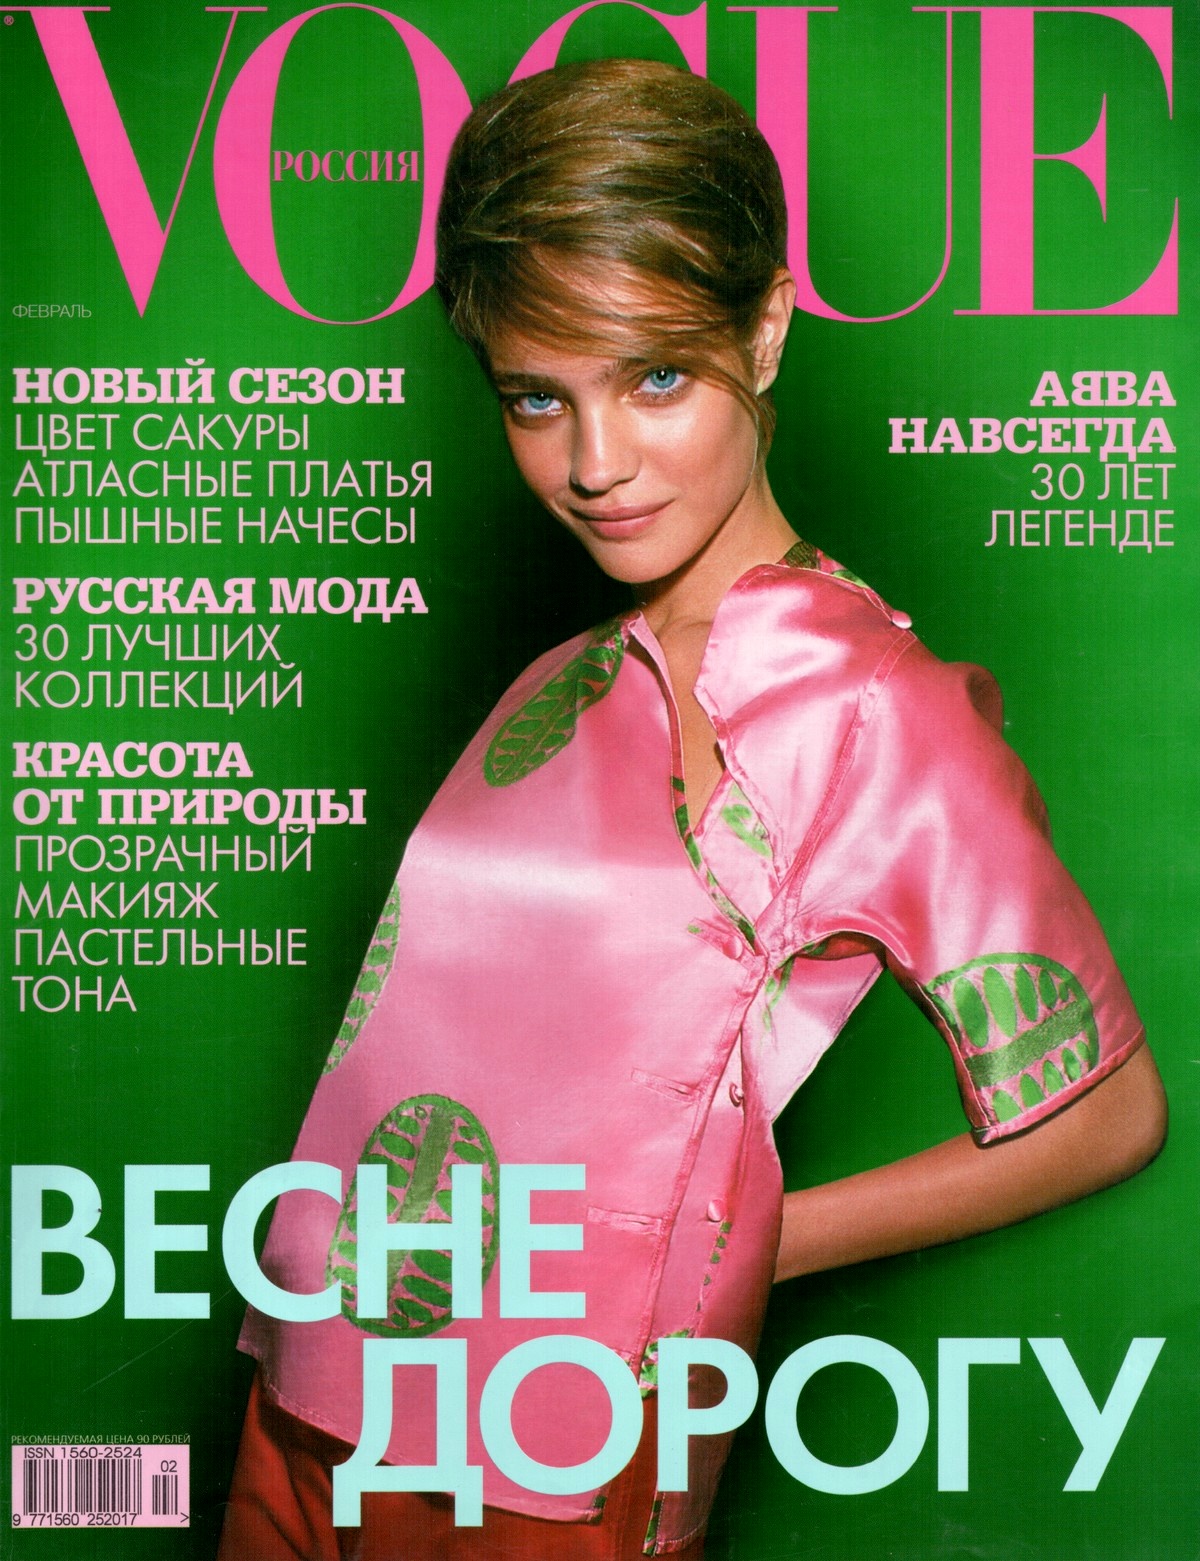 Обложки русских журналов. Обложка русского Vogue с Водяновой 2008.